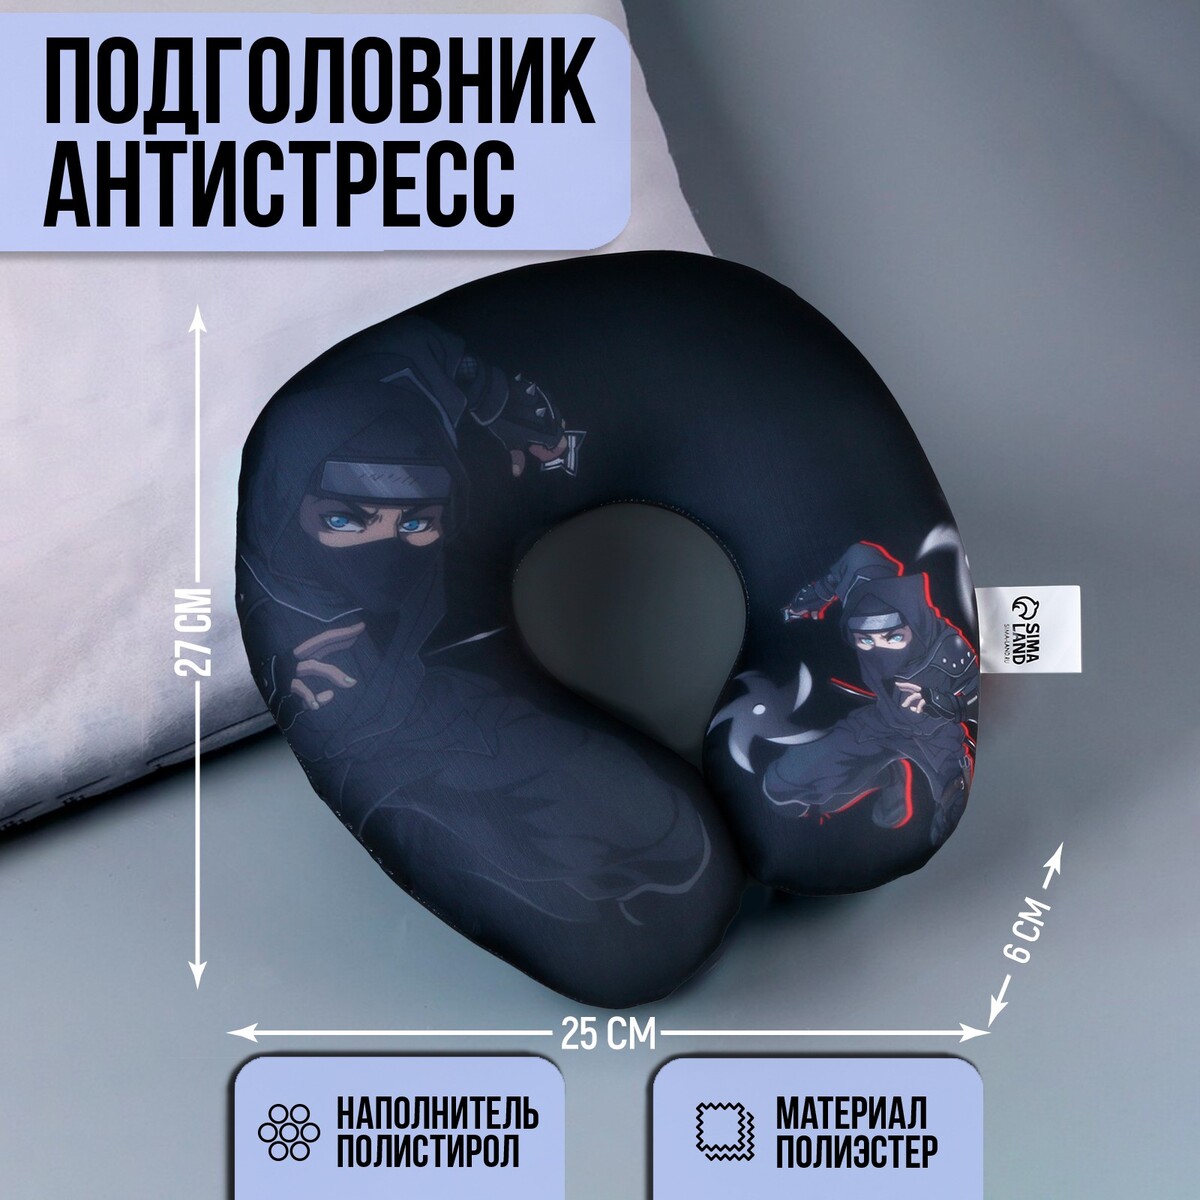 Подушка для путешествий антистресс